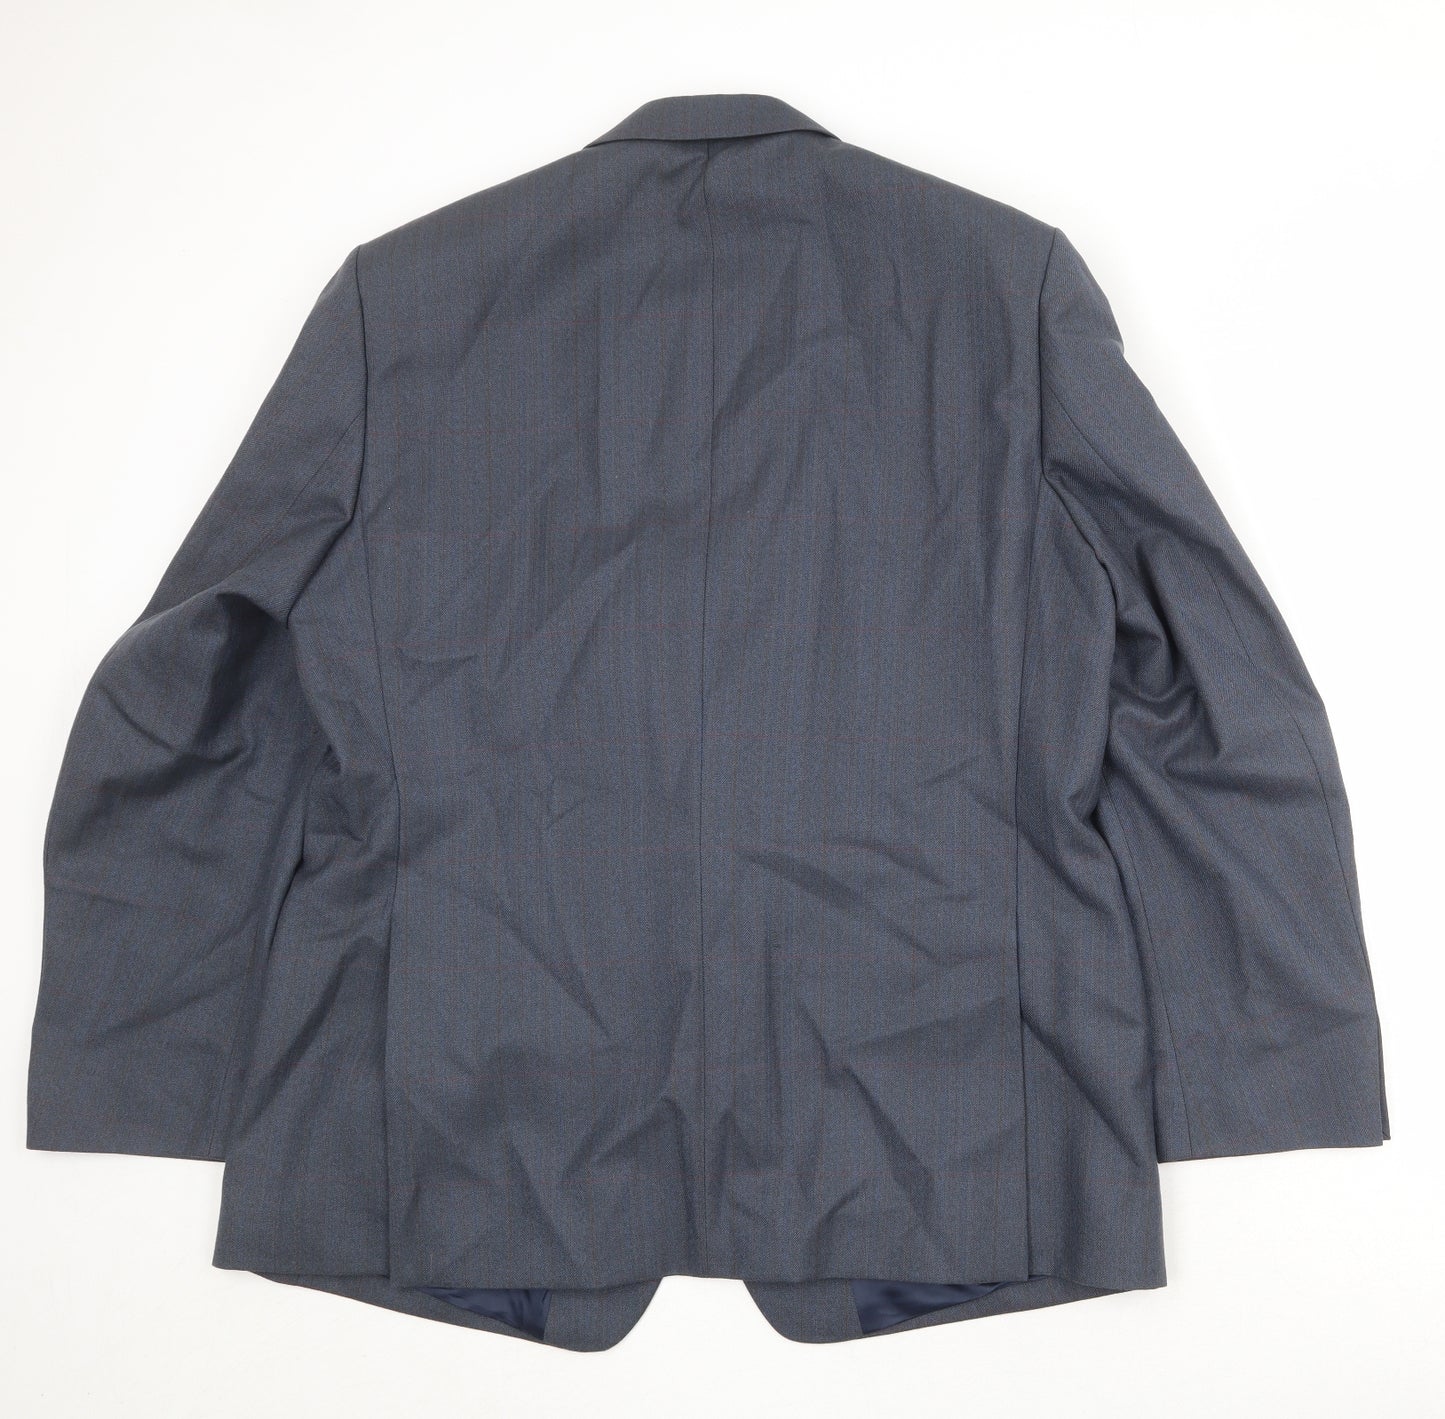 Eric Spencer Mens Blue Wool Jacket Suit Jacket Size 46 Regular